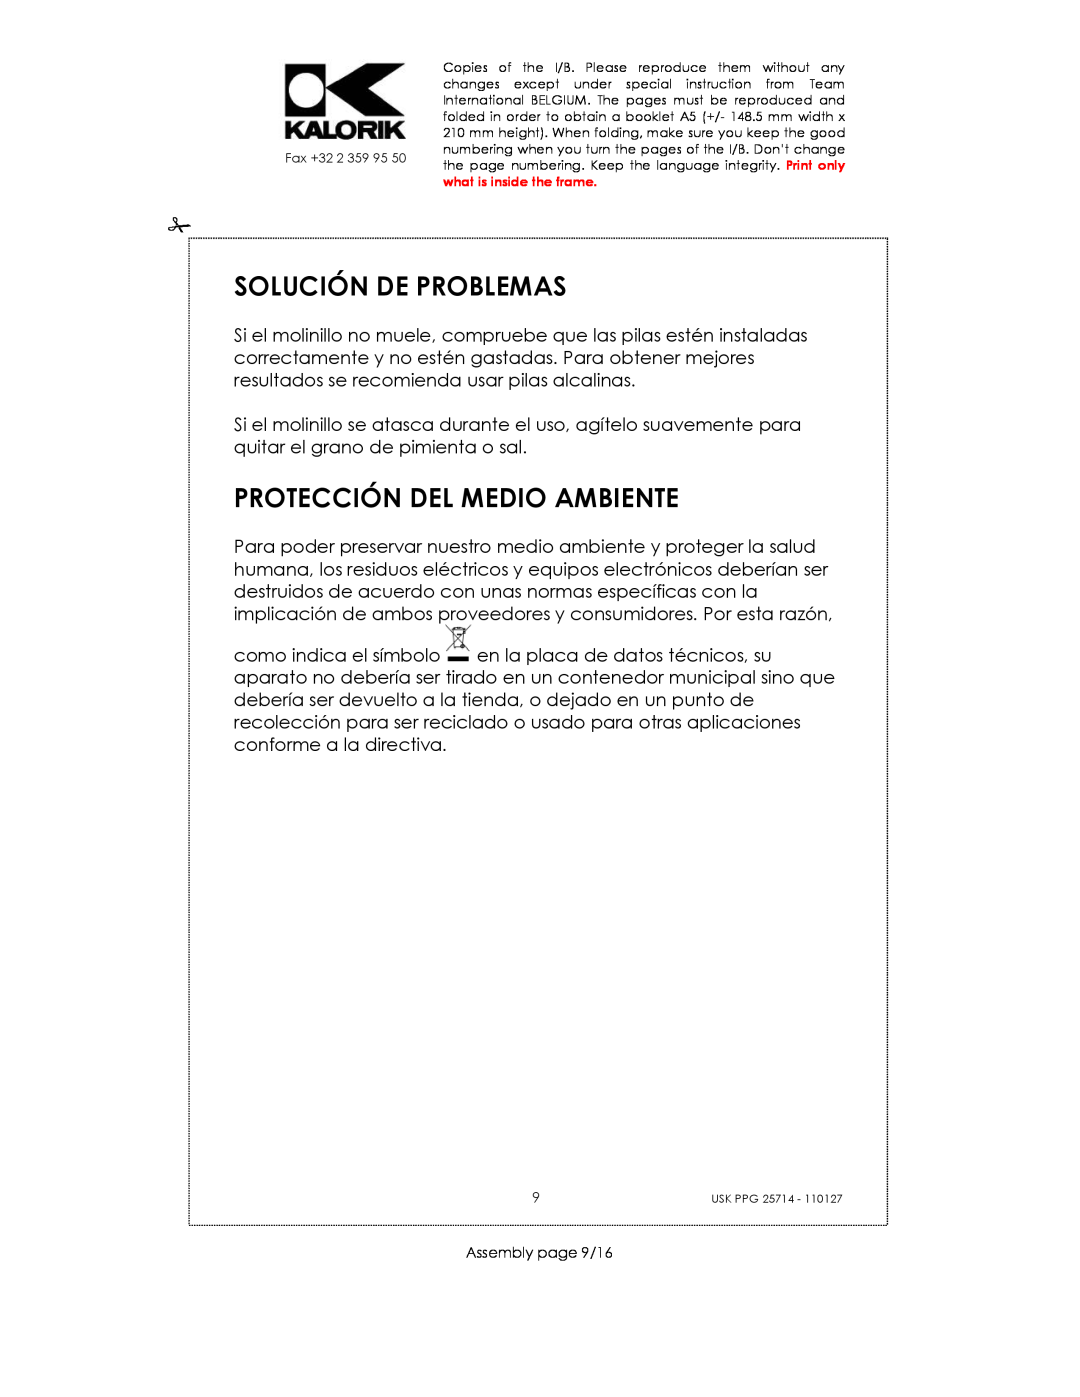 Kalorik USK PPG 25714 manual Solución De Problemas, Protección Del Medio Ambiente, Assembly page 9/16 